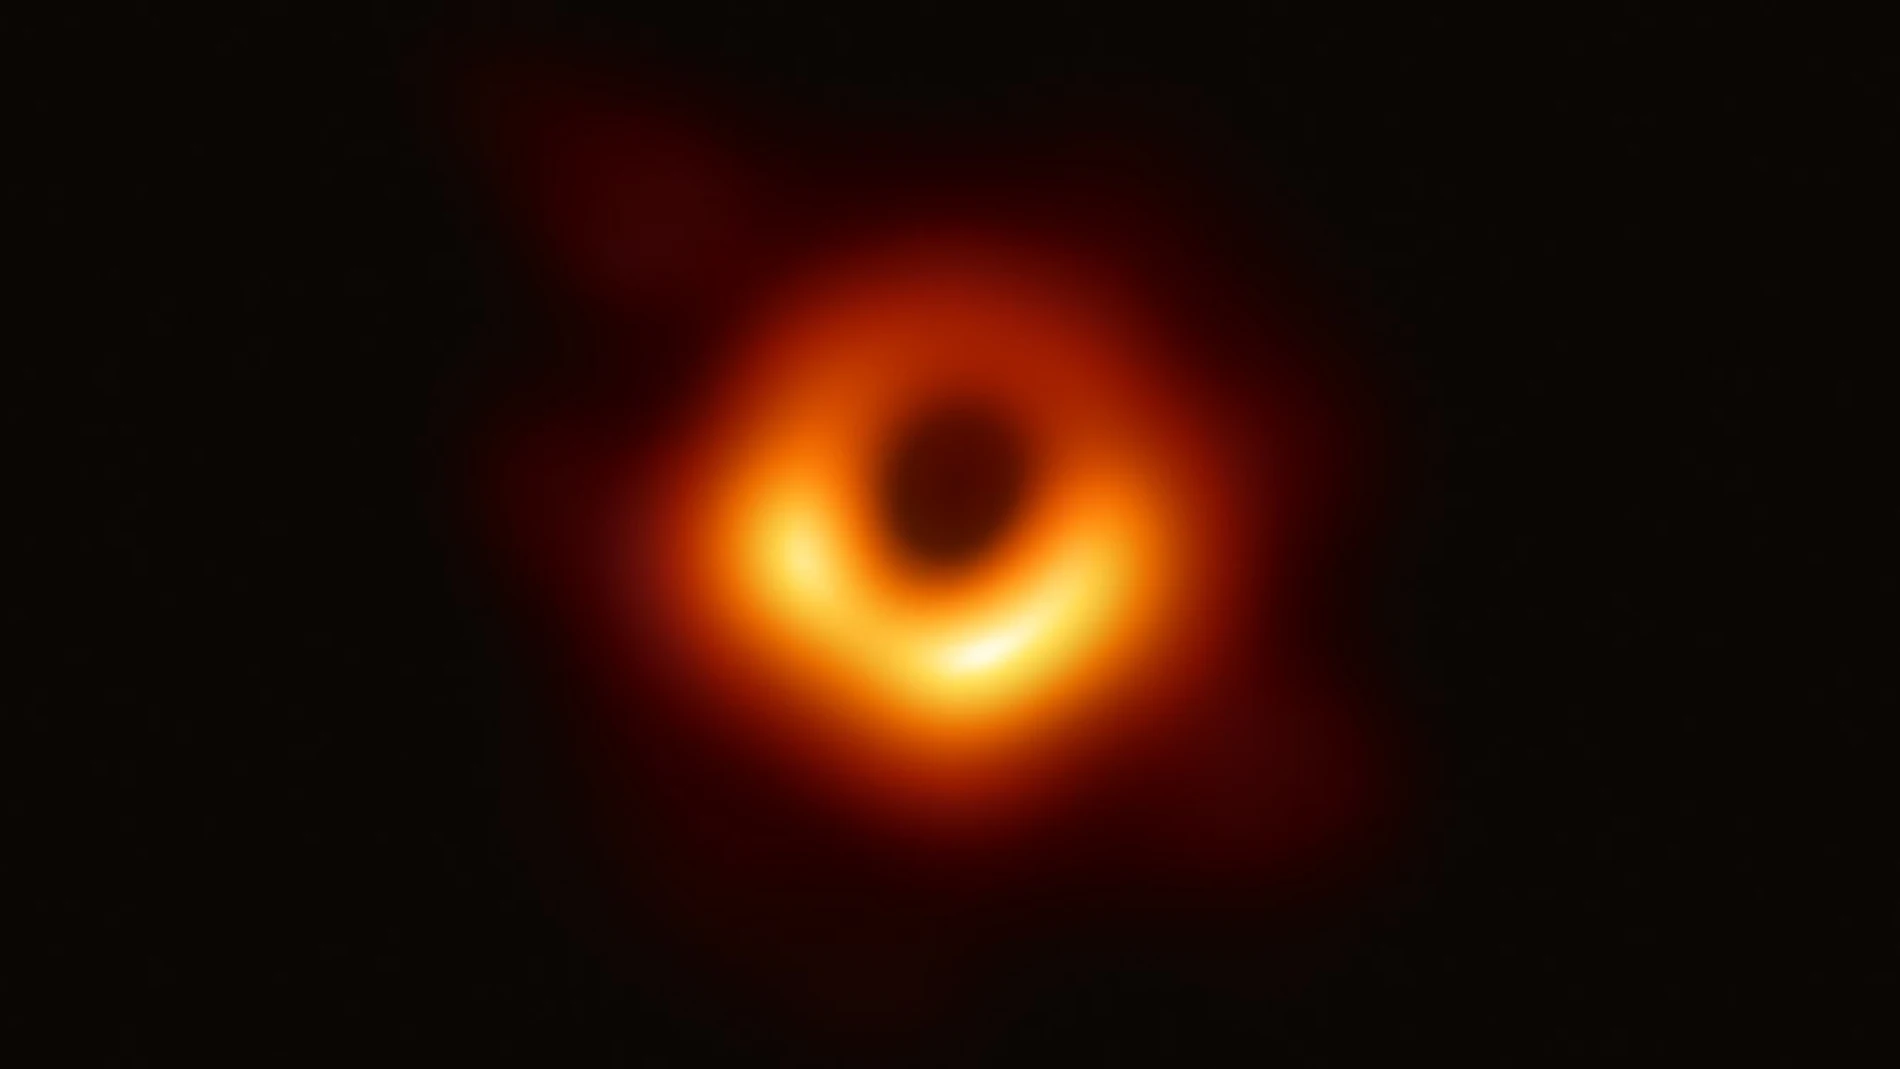 Imagen del agujero negro central de la galaxia M87. En ella se aprecia un círculo de luz, debido a la materia caliente que gira en torno al agujero negro. El círculo negro central no es el propio agujero negro, sino su sombra, varias veces más grande que él.